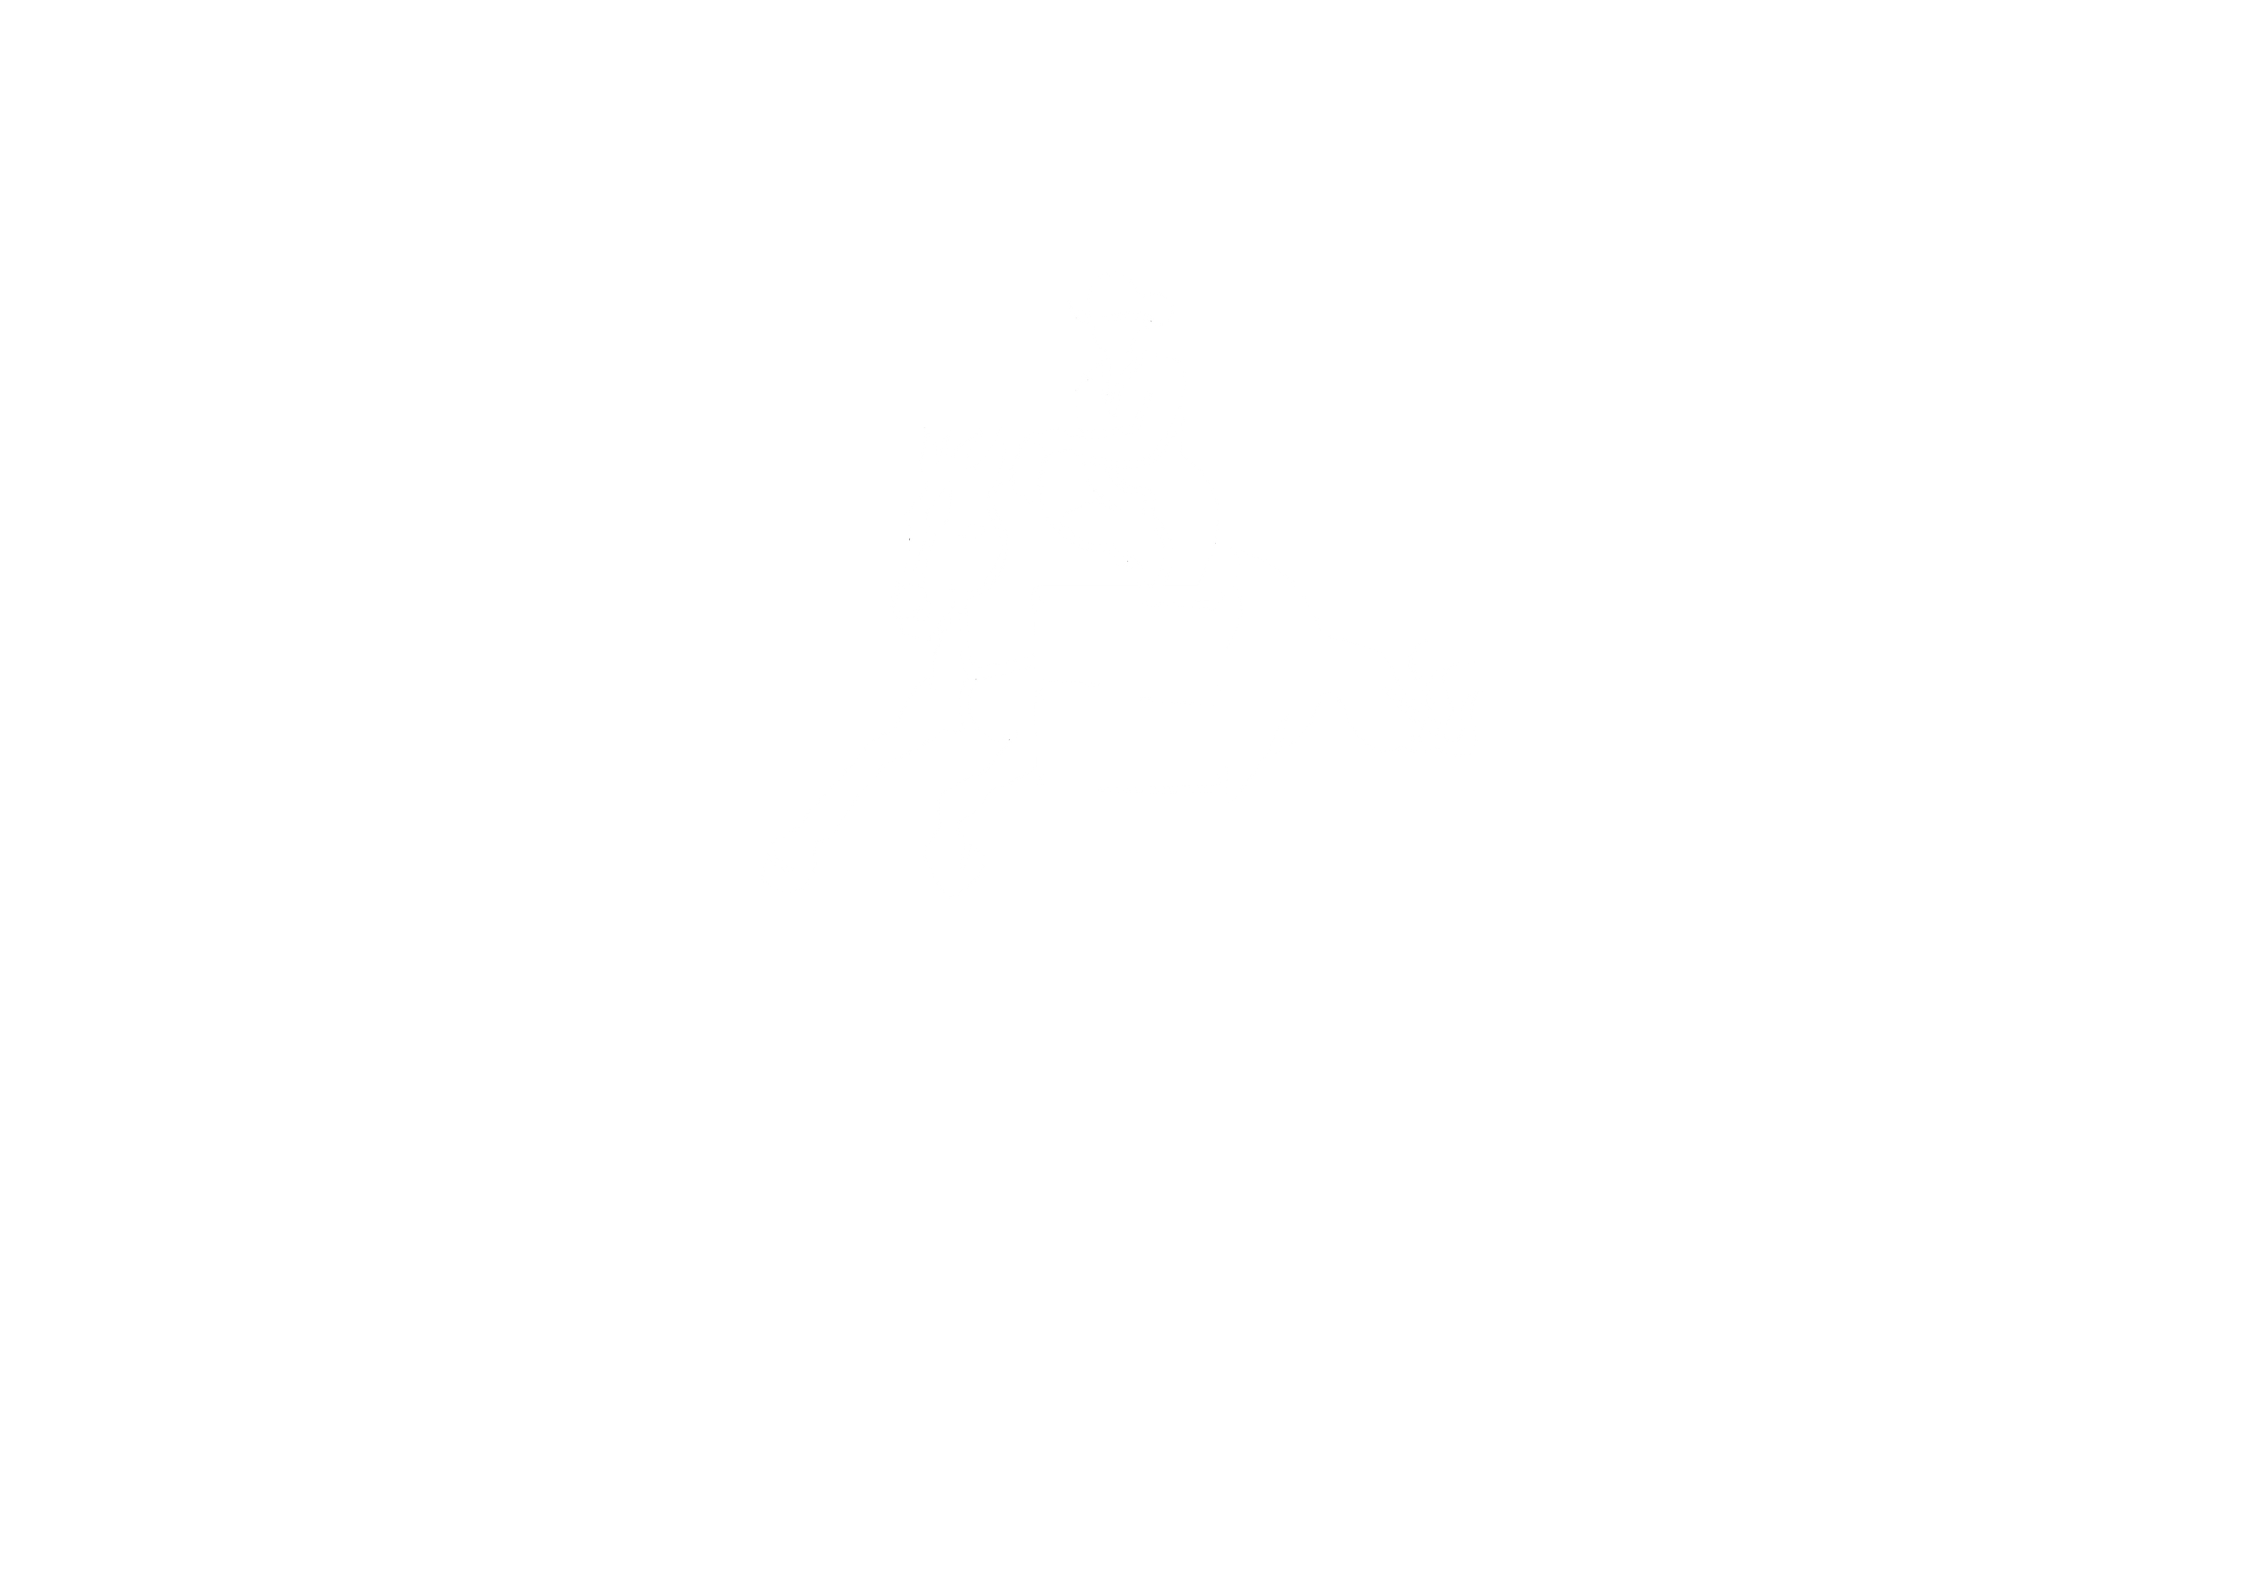 Big Sky Rodeo Co